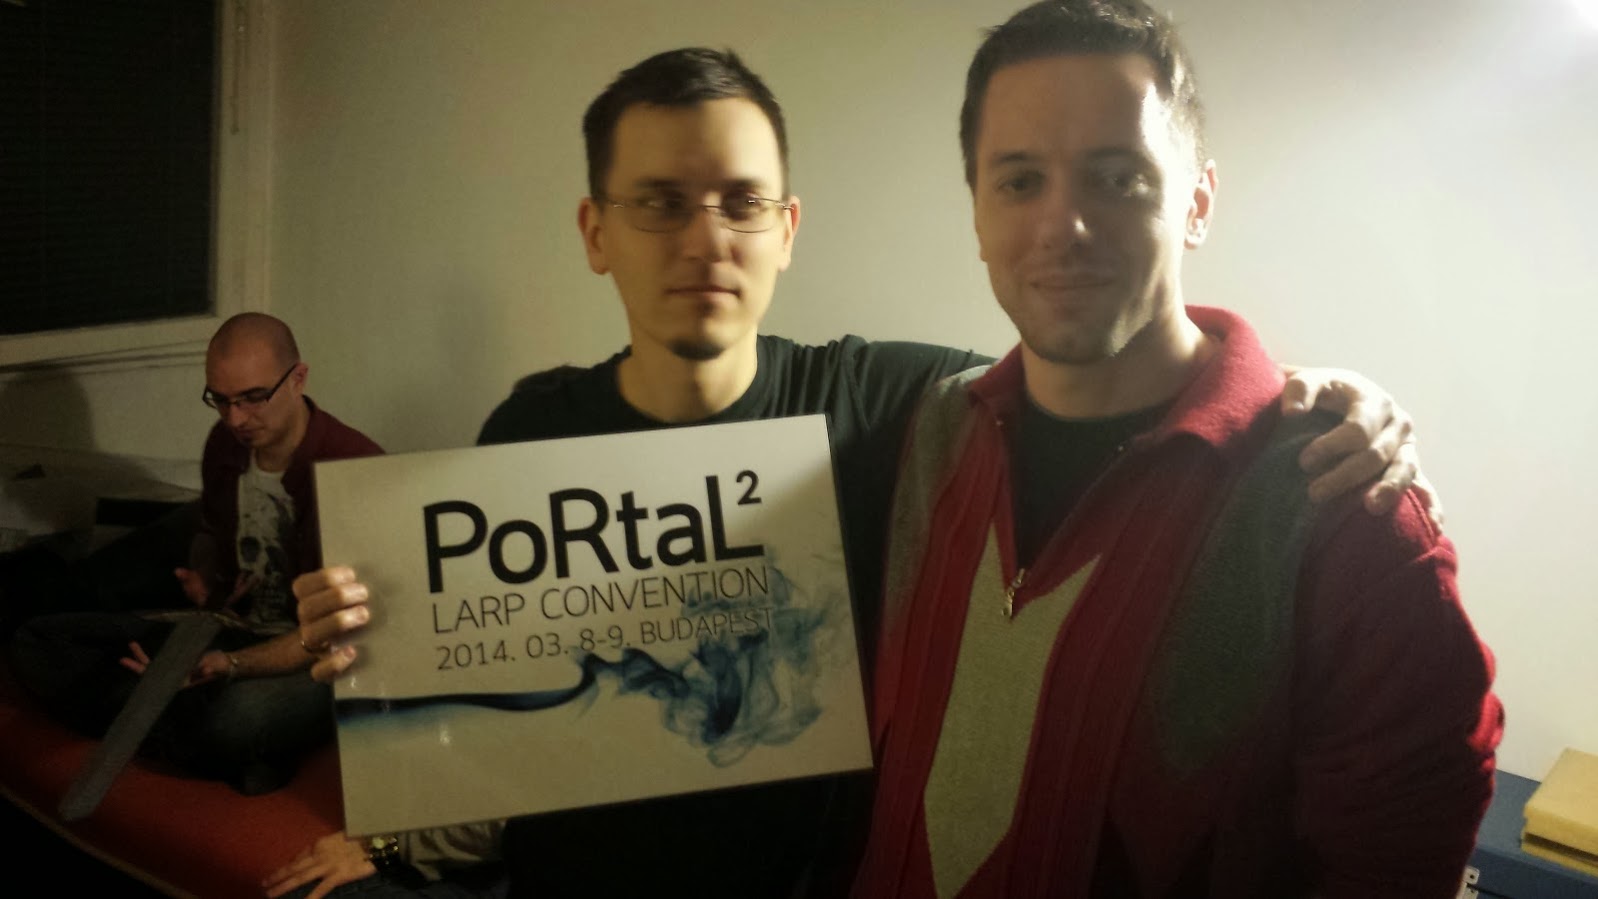 PoRtaL2 – How it was